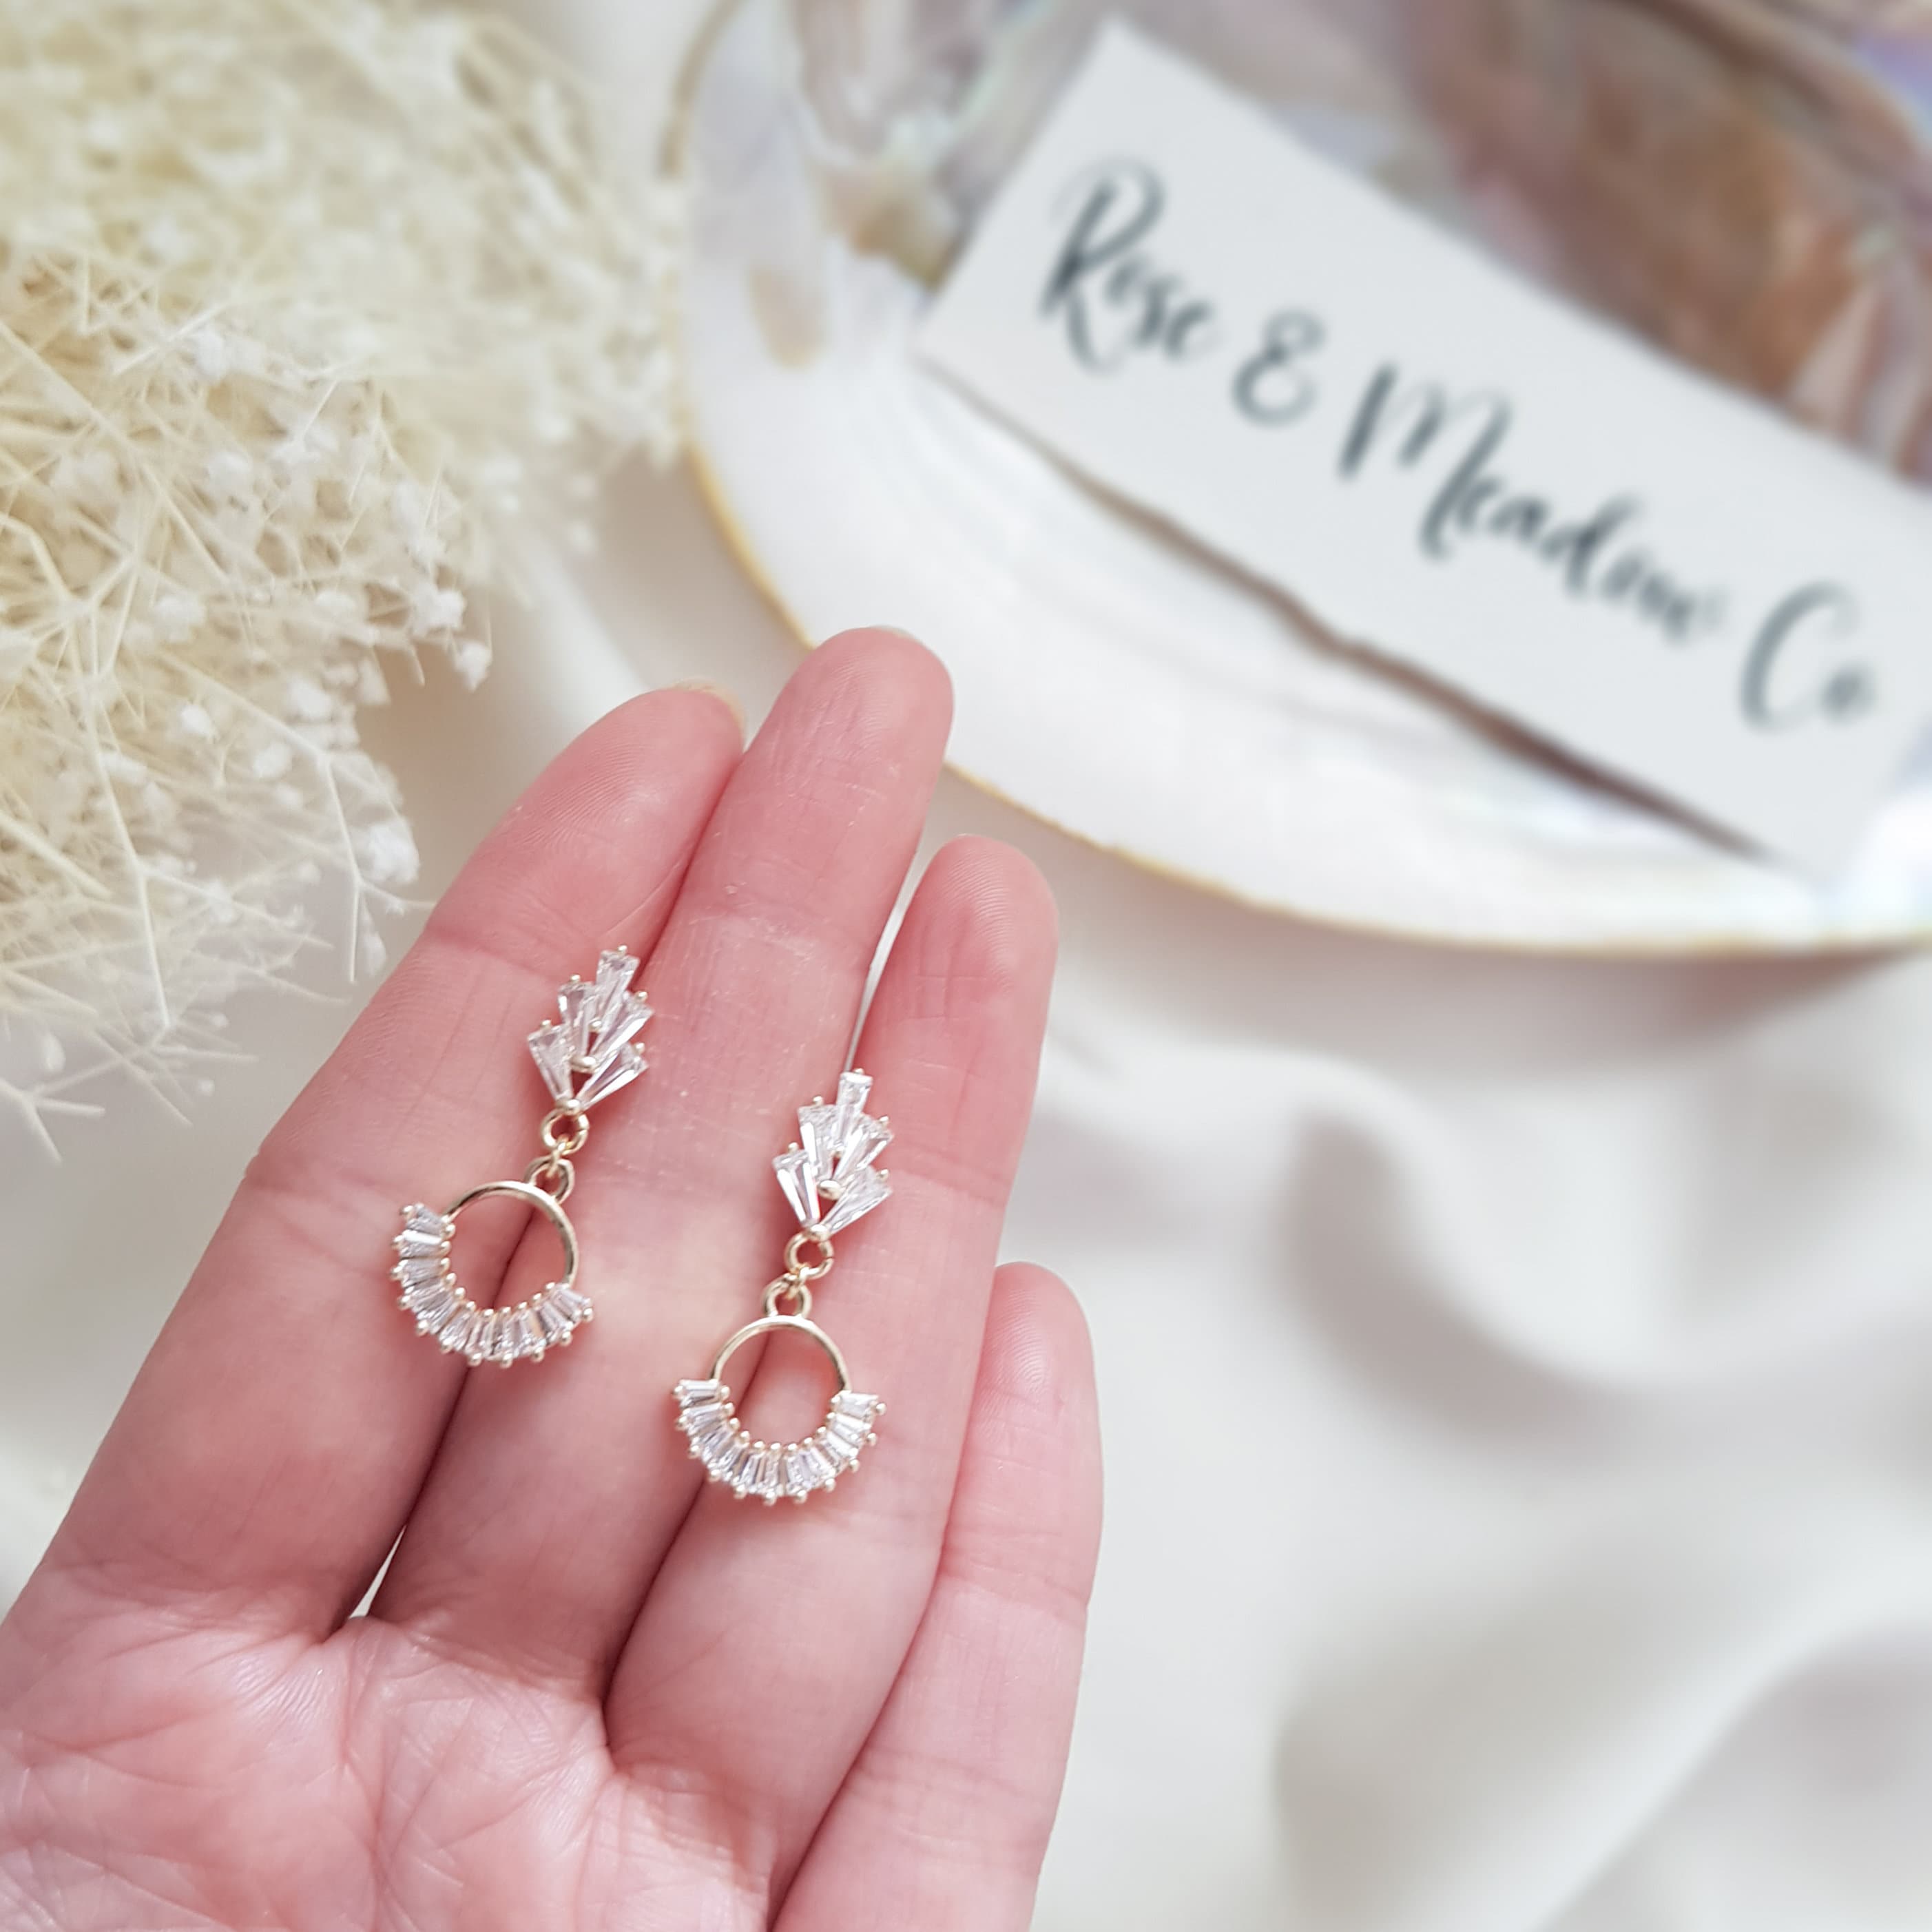 Buy Bridal Stud Earrings, Pink and White Opal Rhinestone Stud Earrings, Bridesmaids  Jewelry, Crystal Large Stud Earrings Online in India - Etsy